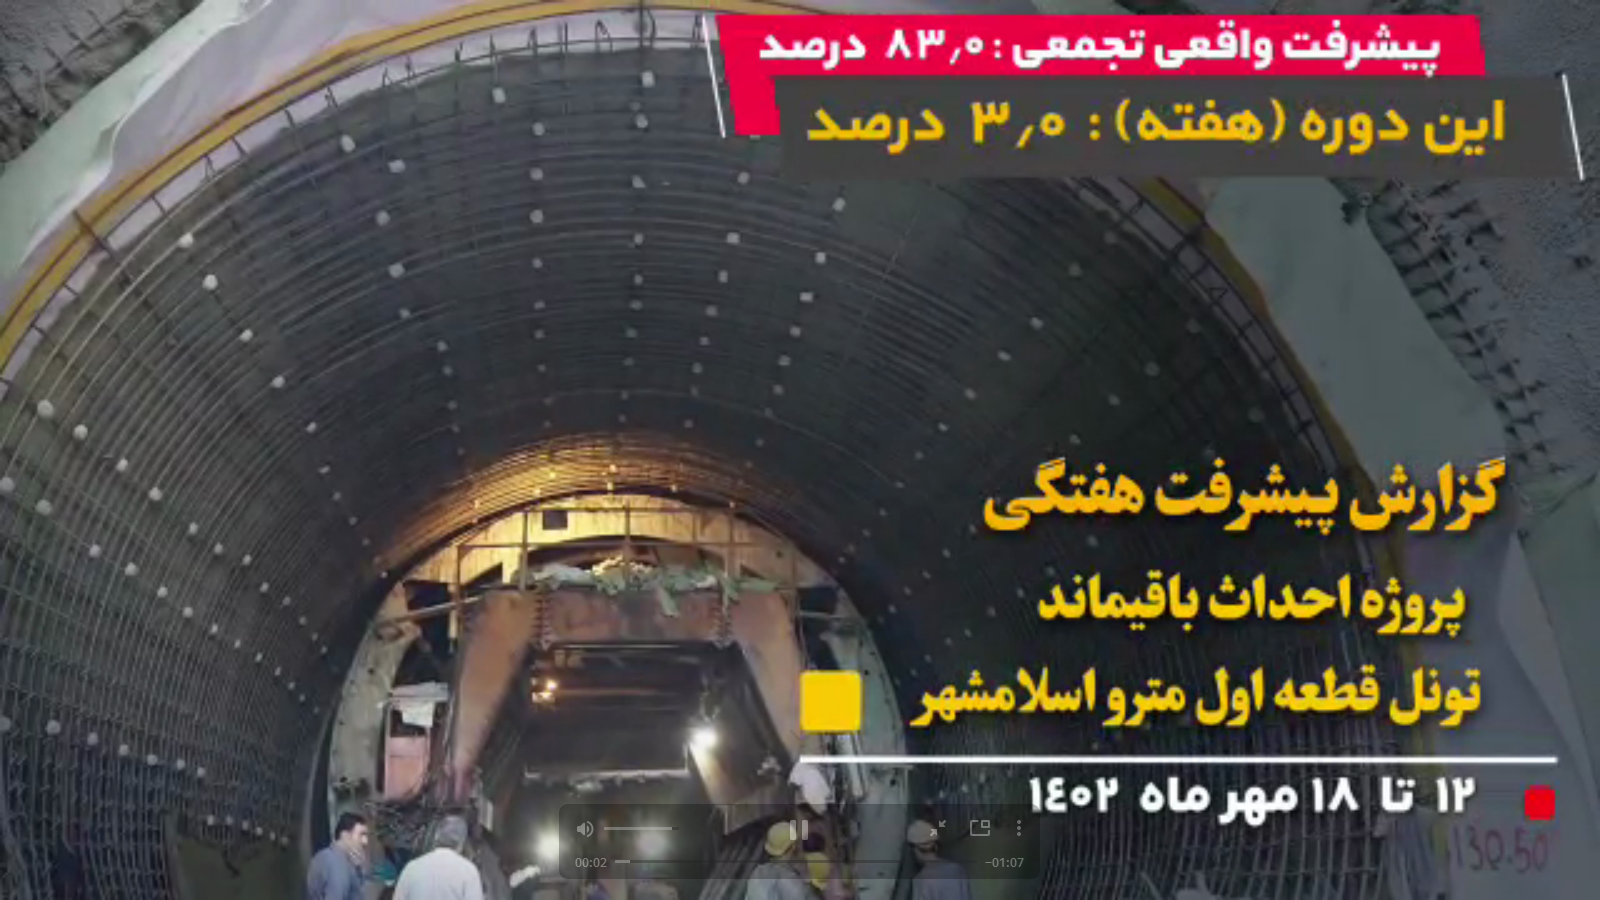 گزارش هفتگی پیشرفت پروژه احداث باقیمانده تونل قطعه اول مترو اسلامشهر از تاریخ 12 الی 18 مهر 1402: